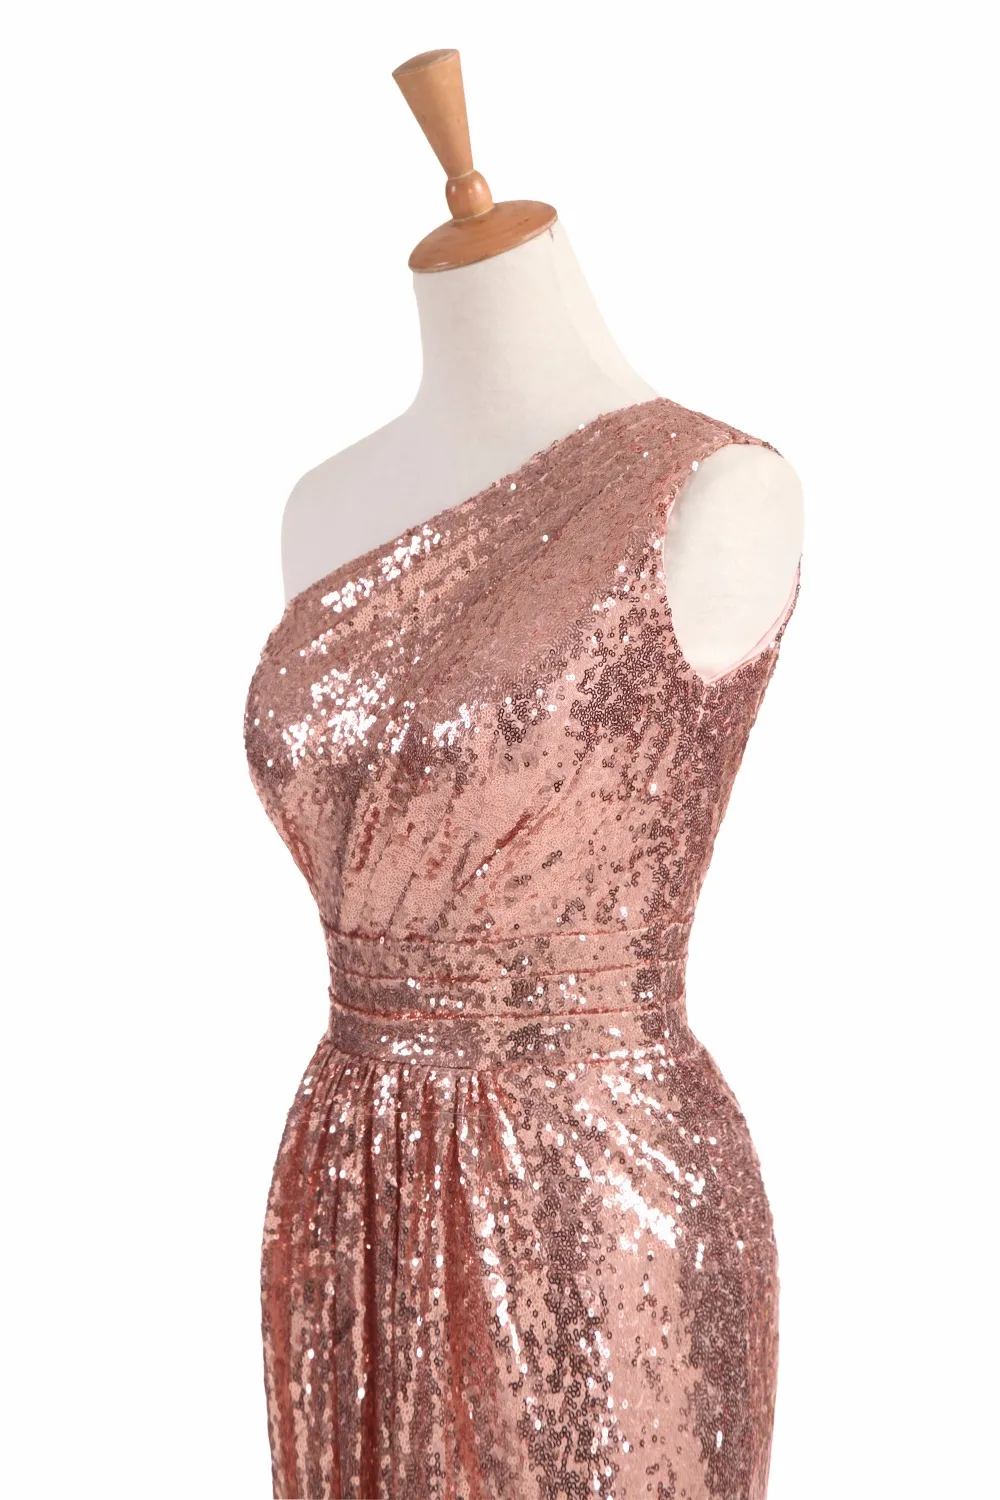 Блестящее платье для подружки невесты розовое золото 2020 винное красное синее на